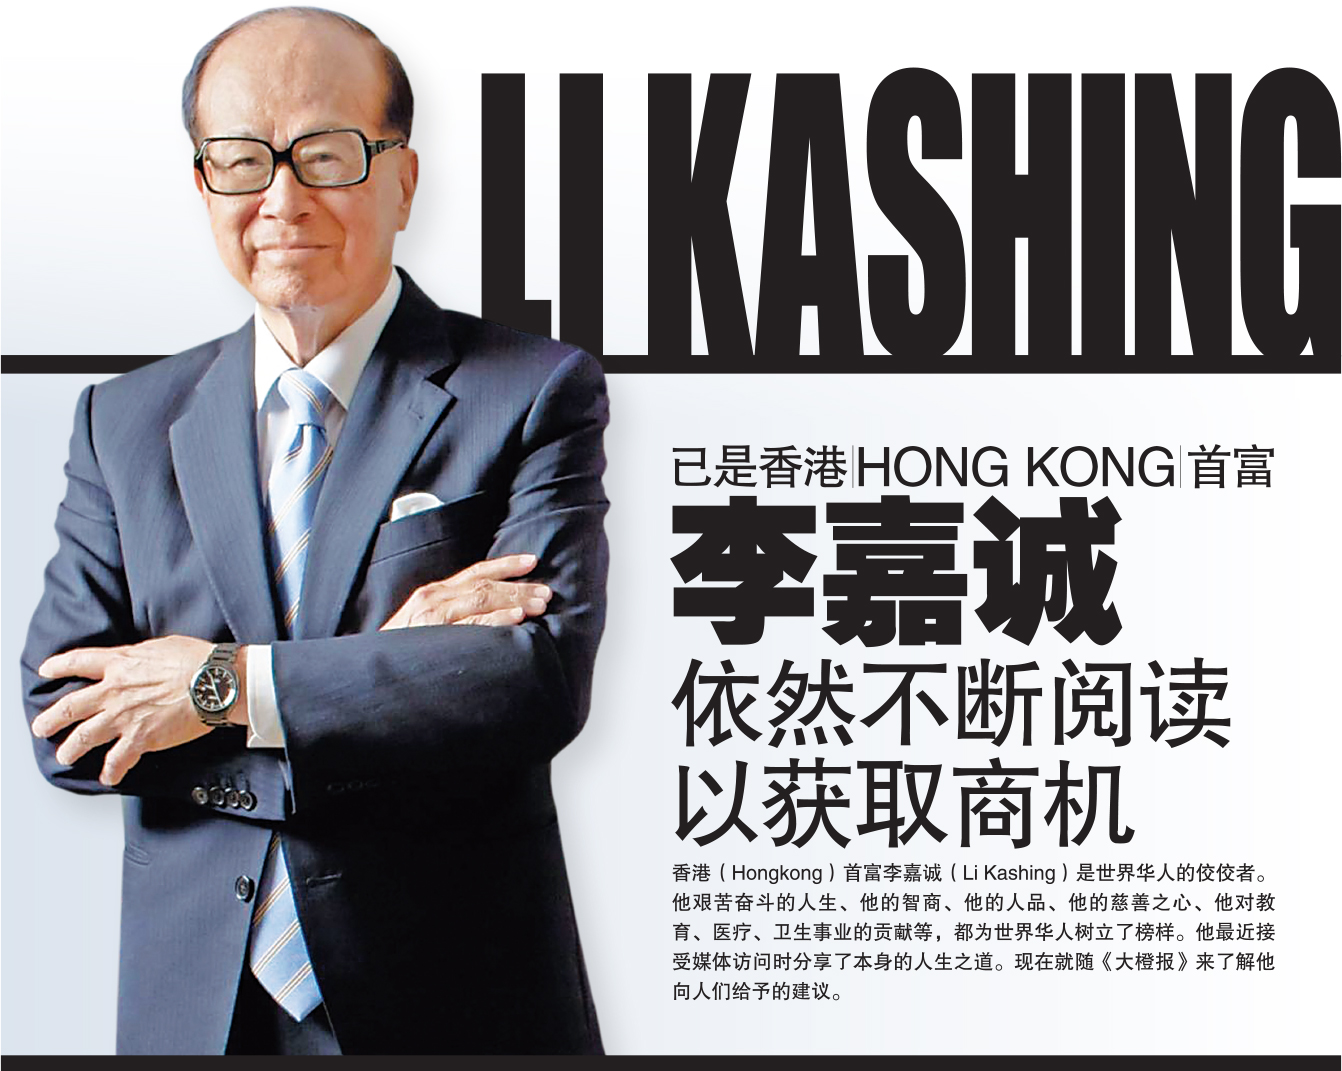 香港（Hongkong）首富 李嘉诚爵士（Sir Li Kashing）功成身退 将管理商业帝国重担交给下一代 | Bigorangemedia